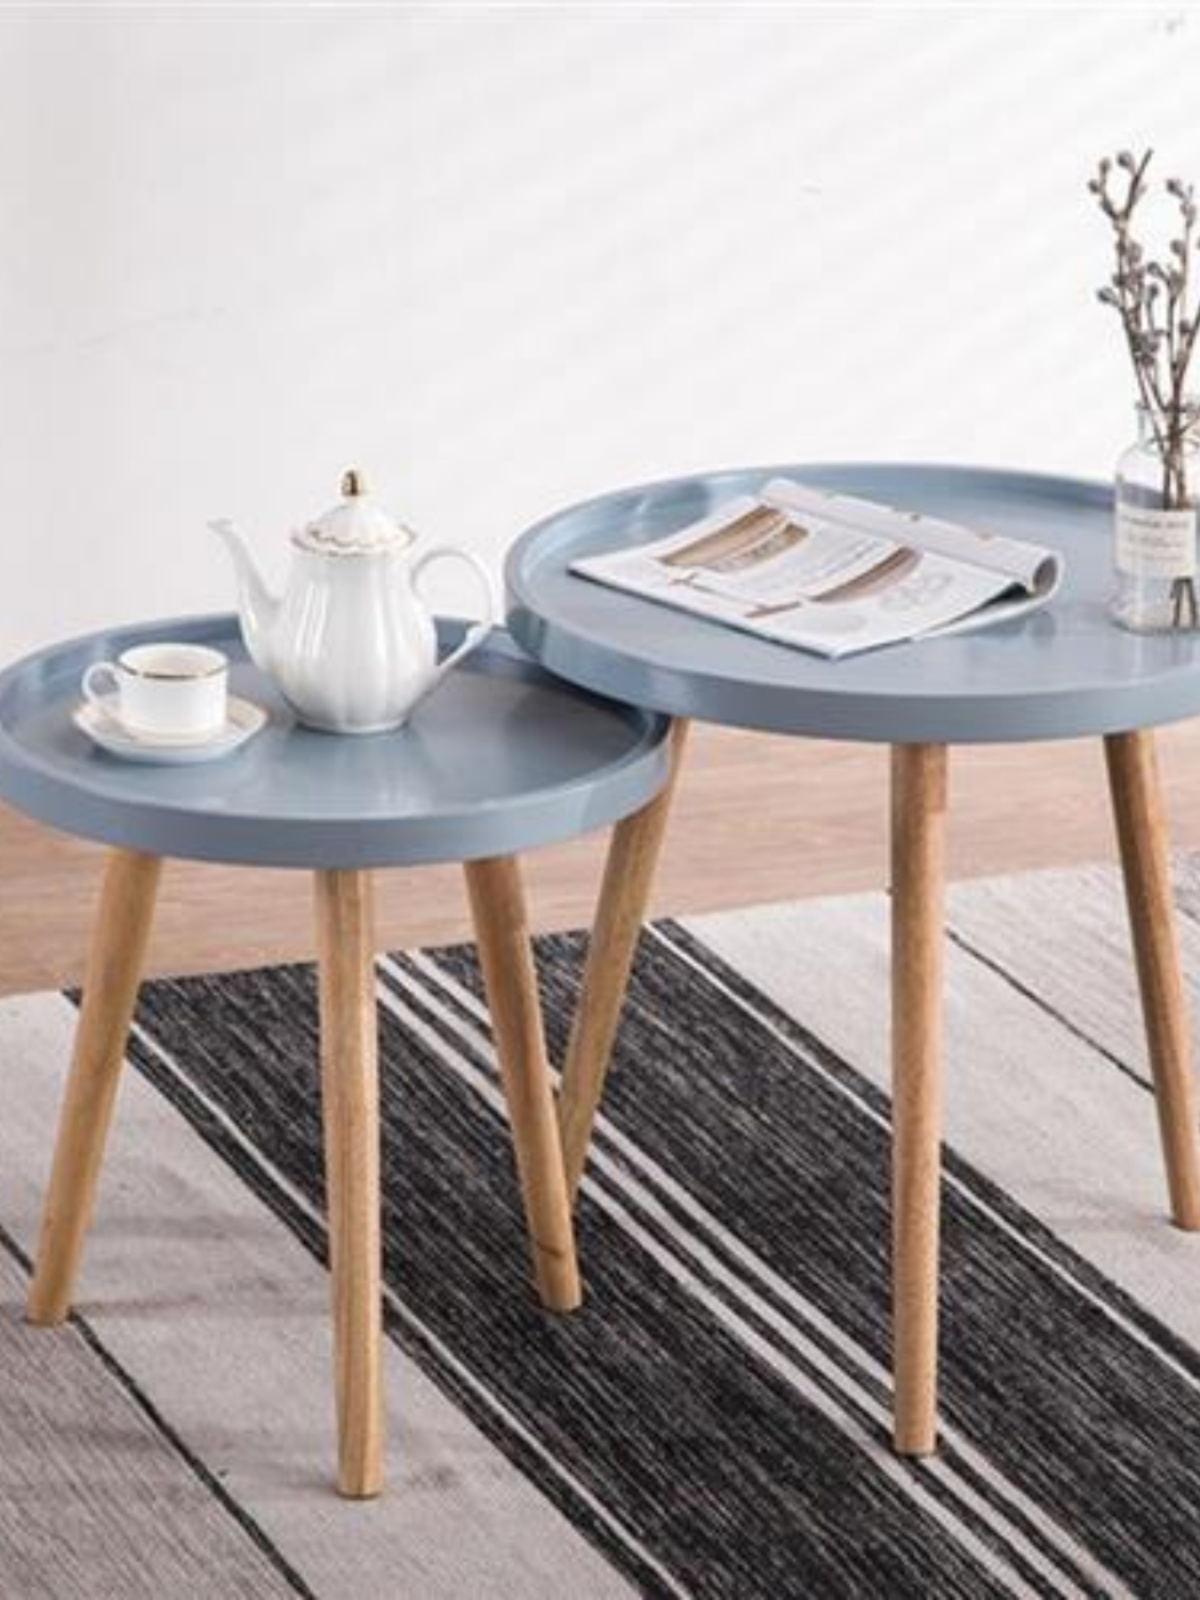 新品创意款客厅家具北蓝风圆形茶几客厅小桌子实木矮4边桌边几 欧